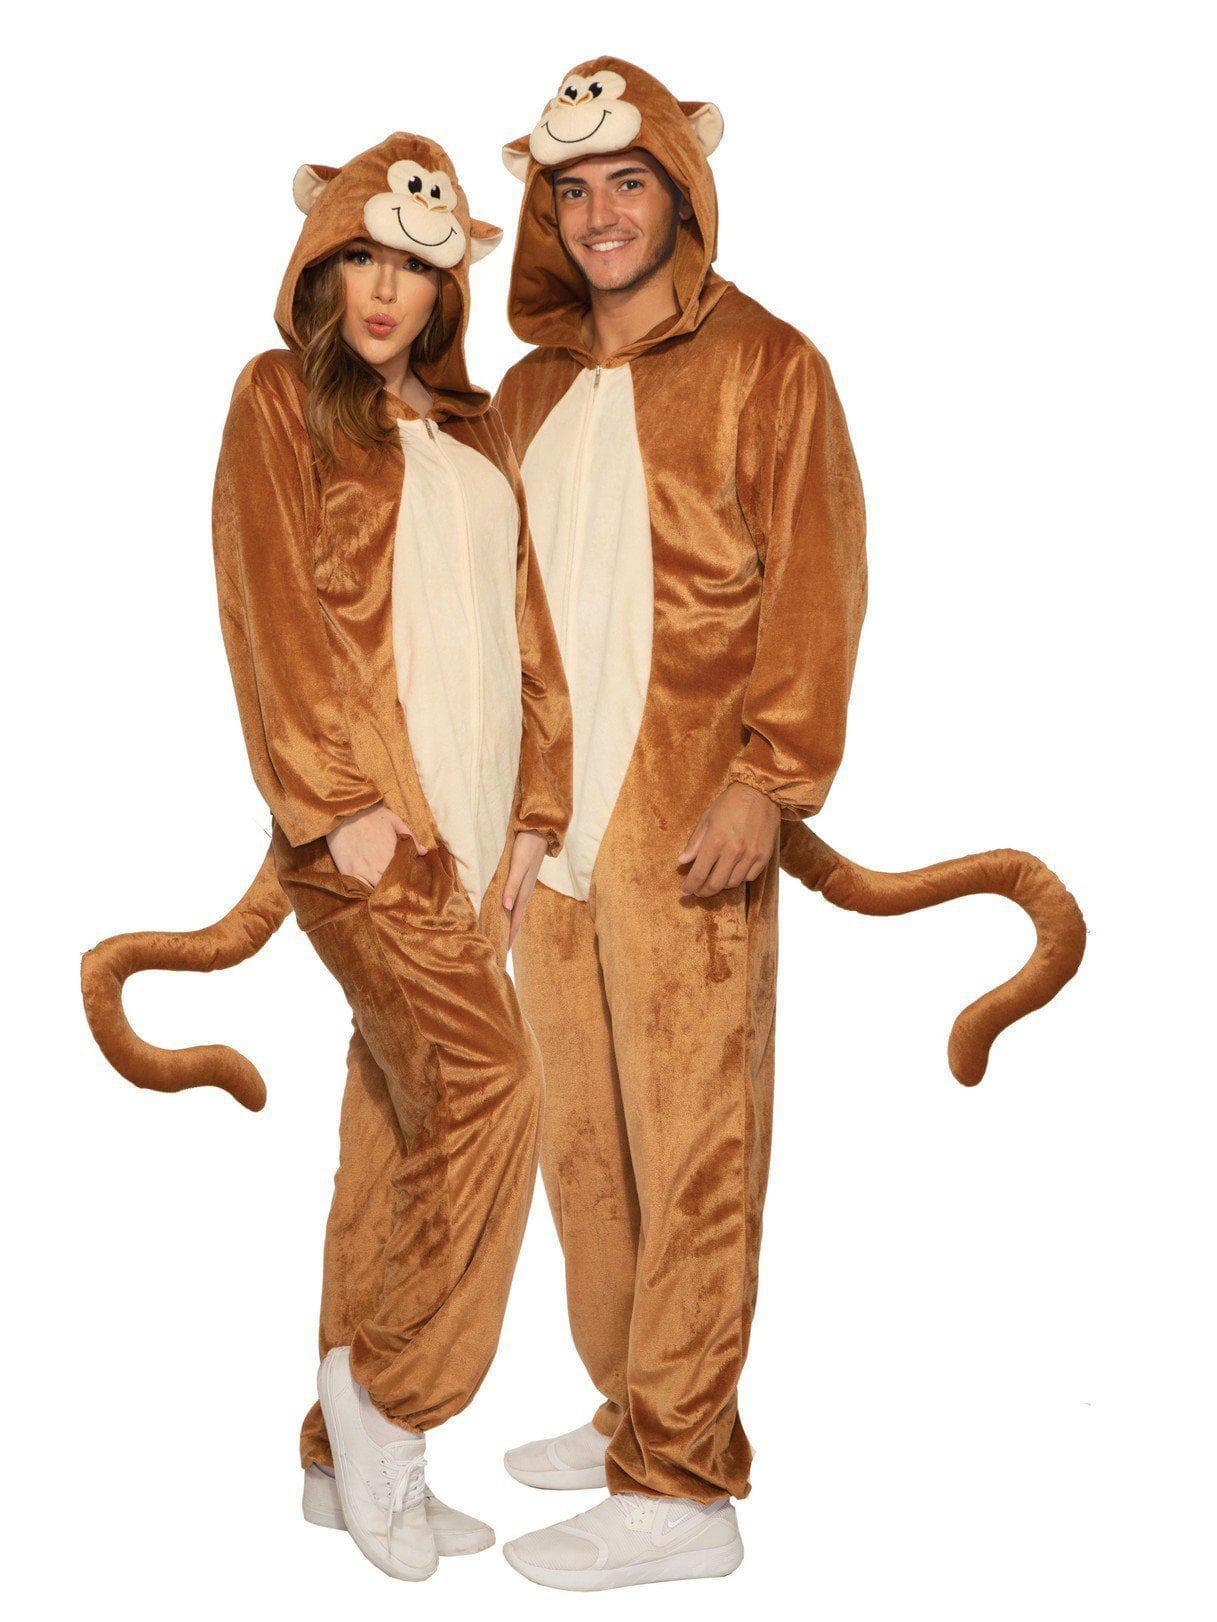 Adult Monkey Costume - costumes.com